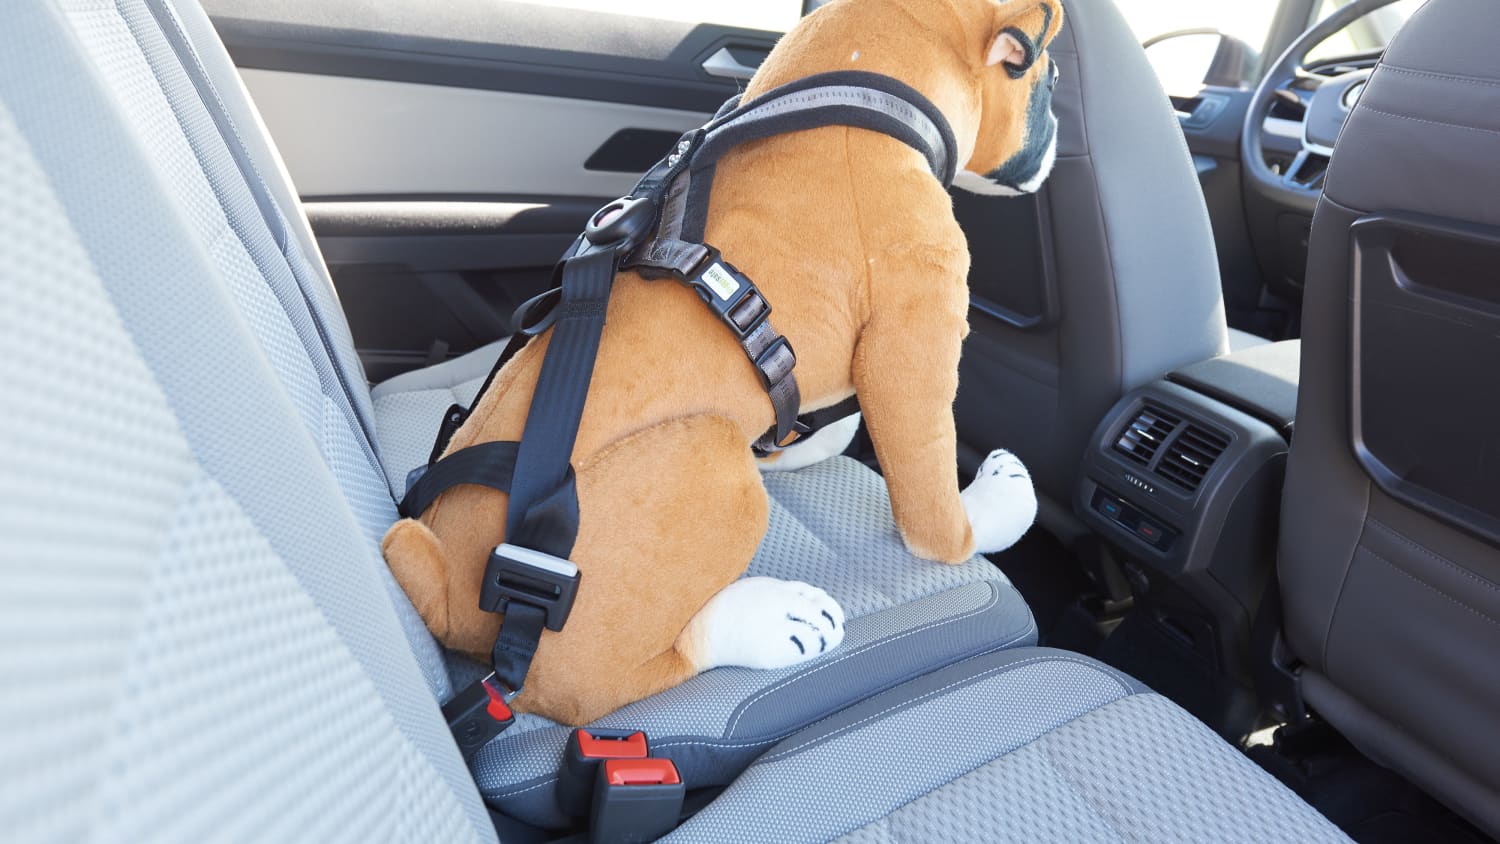 Haustier Auto Isolation Netz Hundesitz Schutz Hund Antikollision Haustier  Supplieseinfach zu installieren, Auto Teiler für sicheres Fahren mit  Kindern und Haustieren